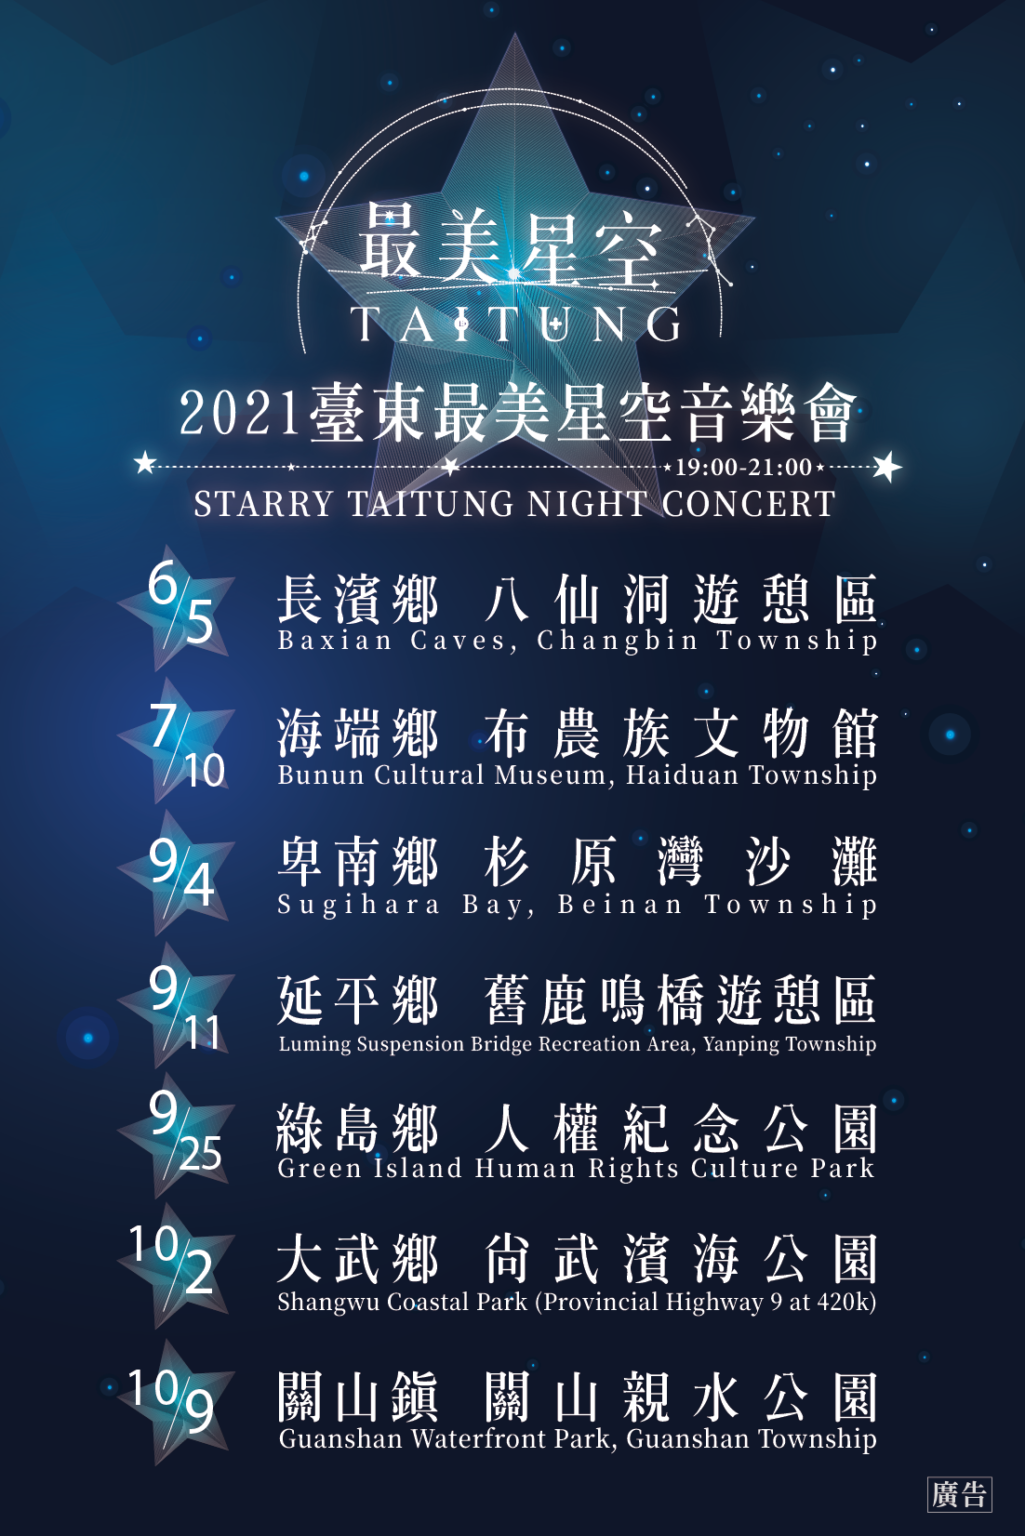 ▲2021台東最美星空導覽活動 | Starry Taitung has planned seven night concerts from June to July on Saturday nights from 5 to 9 p.m. (Courtesy of Starry Taitung/Facebook)